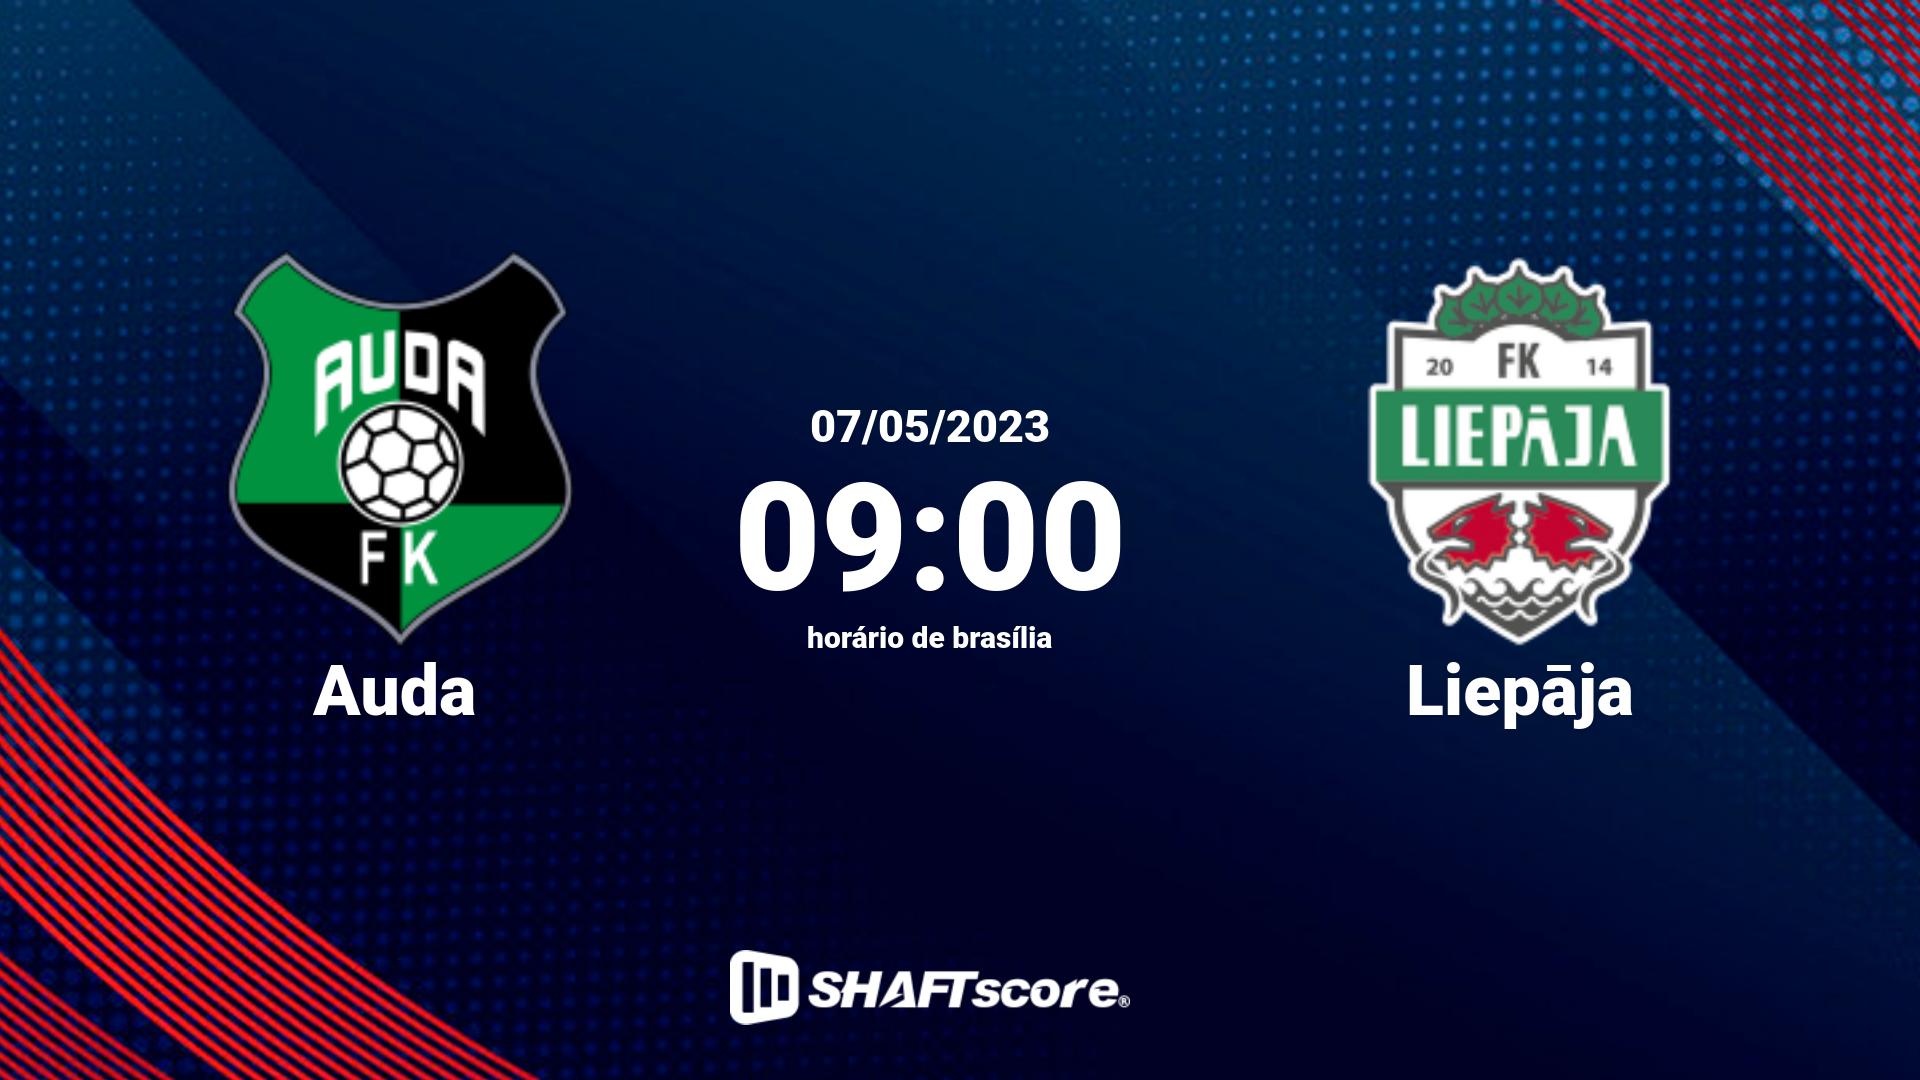 Estatísticas do jogo Auda vs Liepāja 07.05 09:00